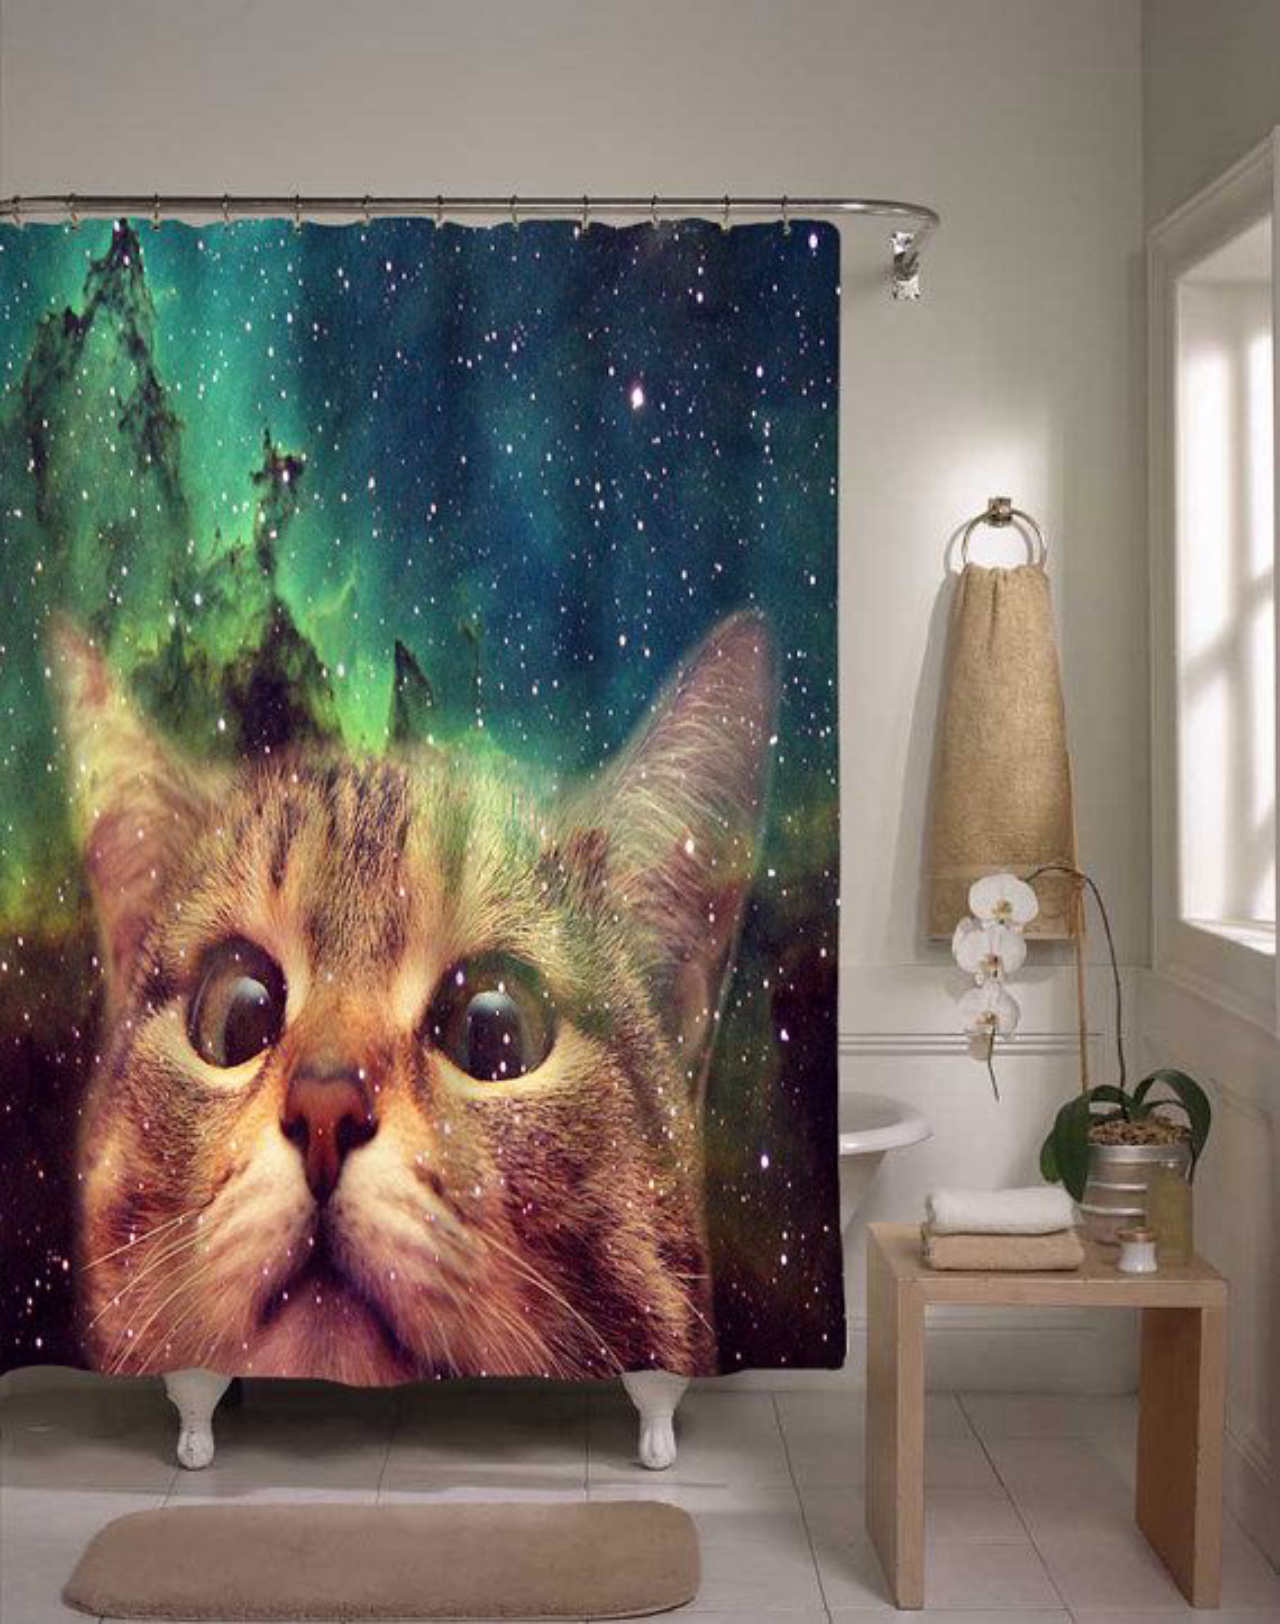 A cortina do banheiro feita especialmente para amantes de gatos. 